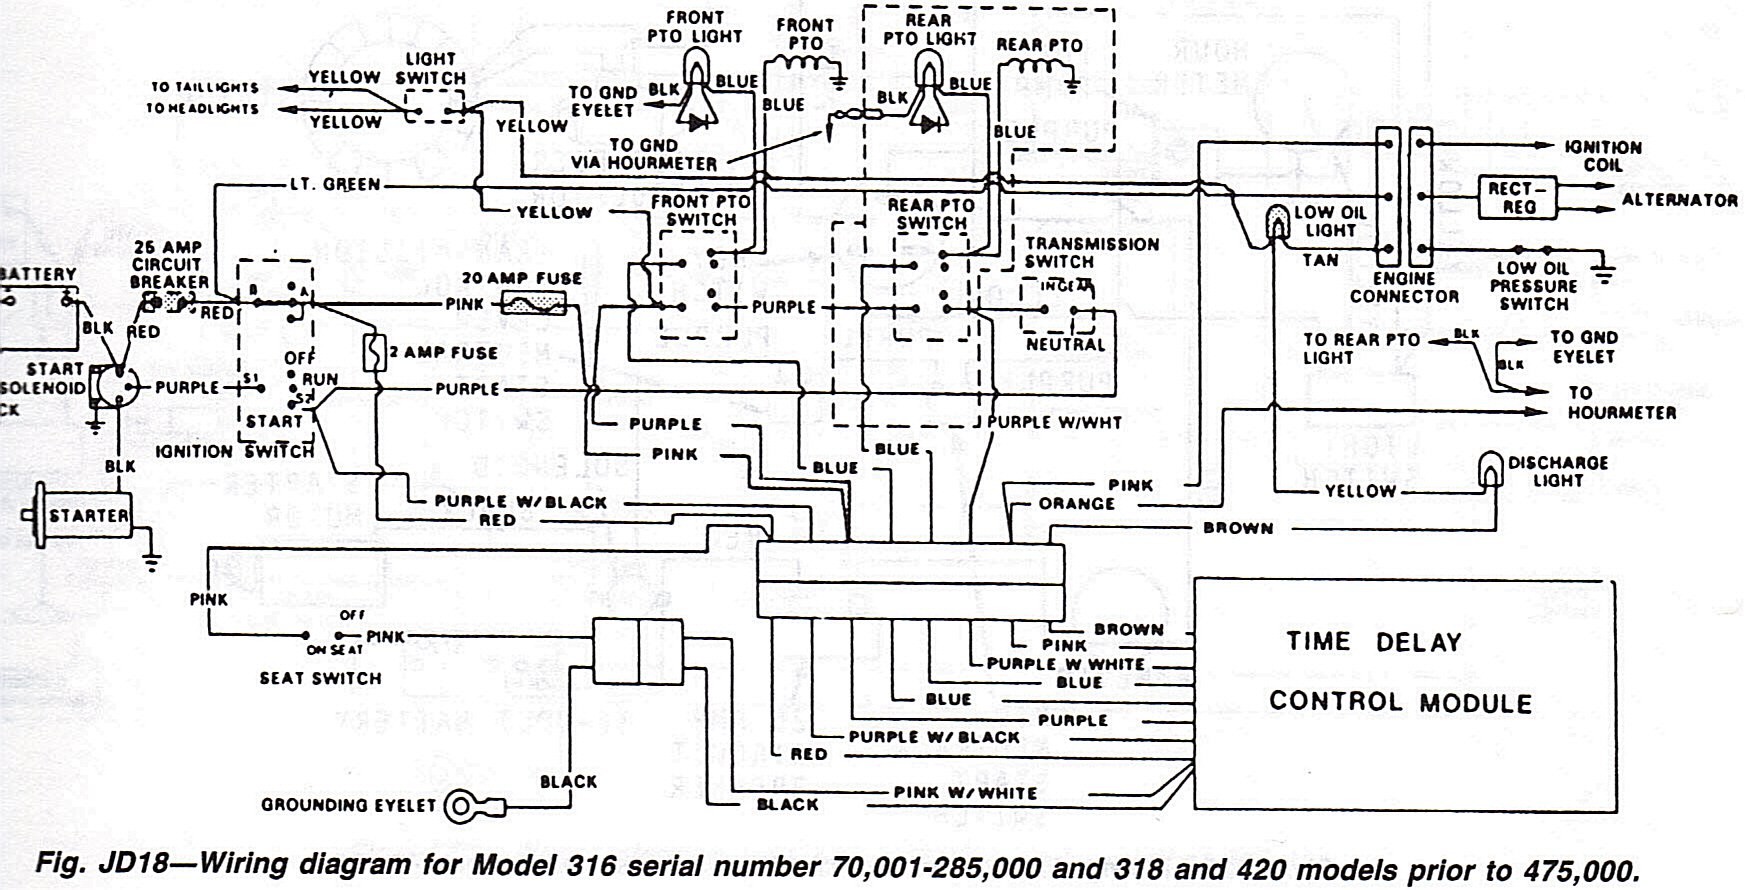 john deere l130 wiring diagram